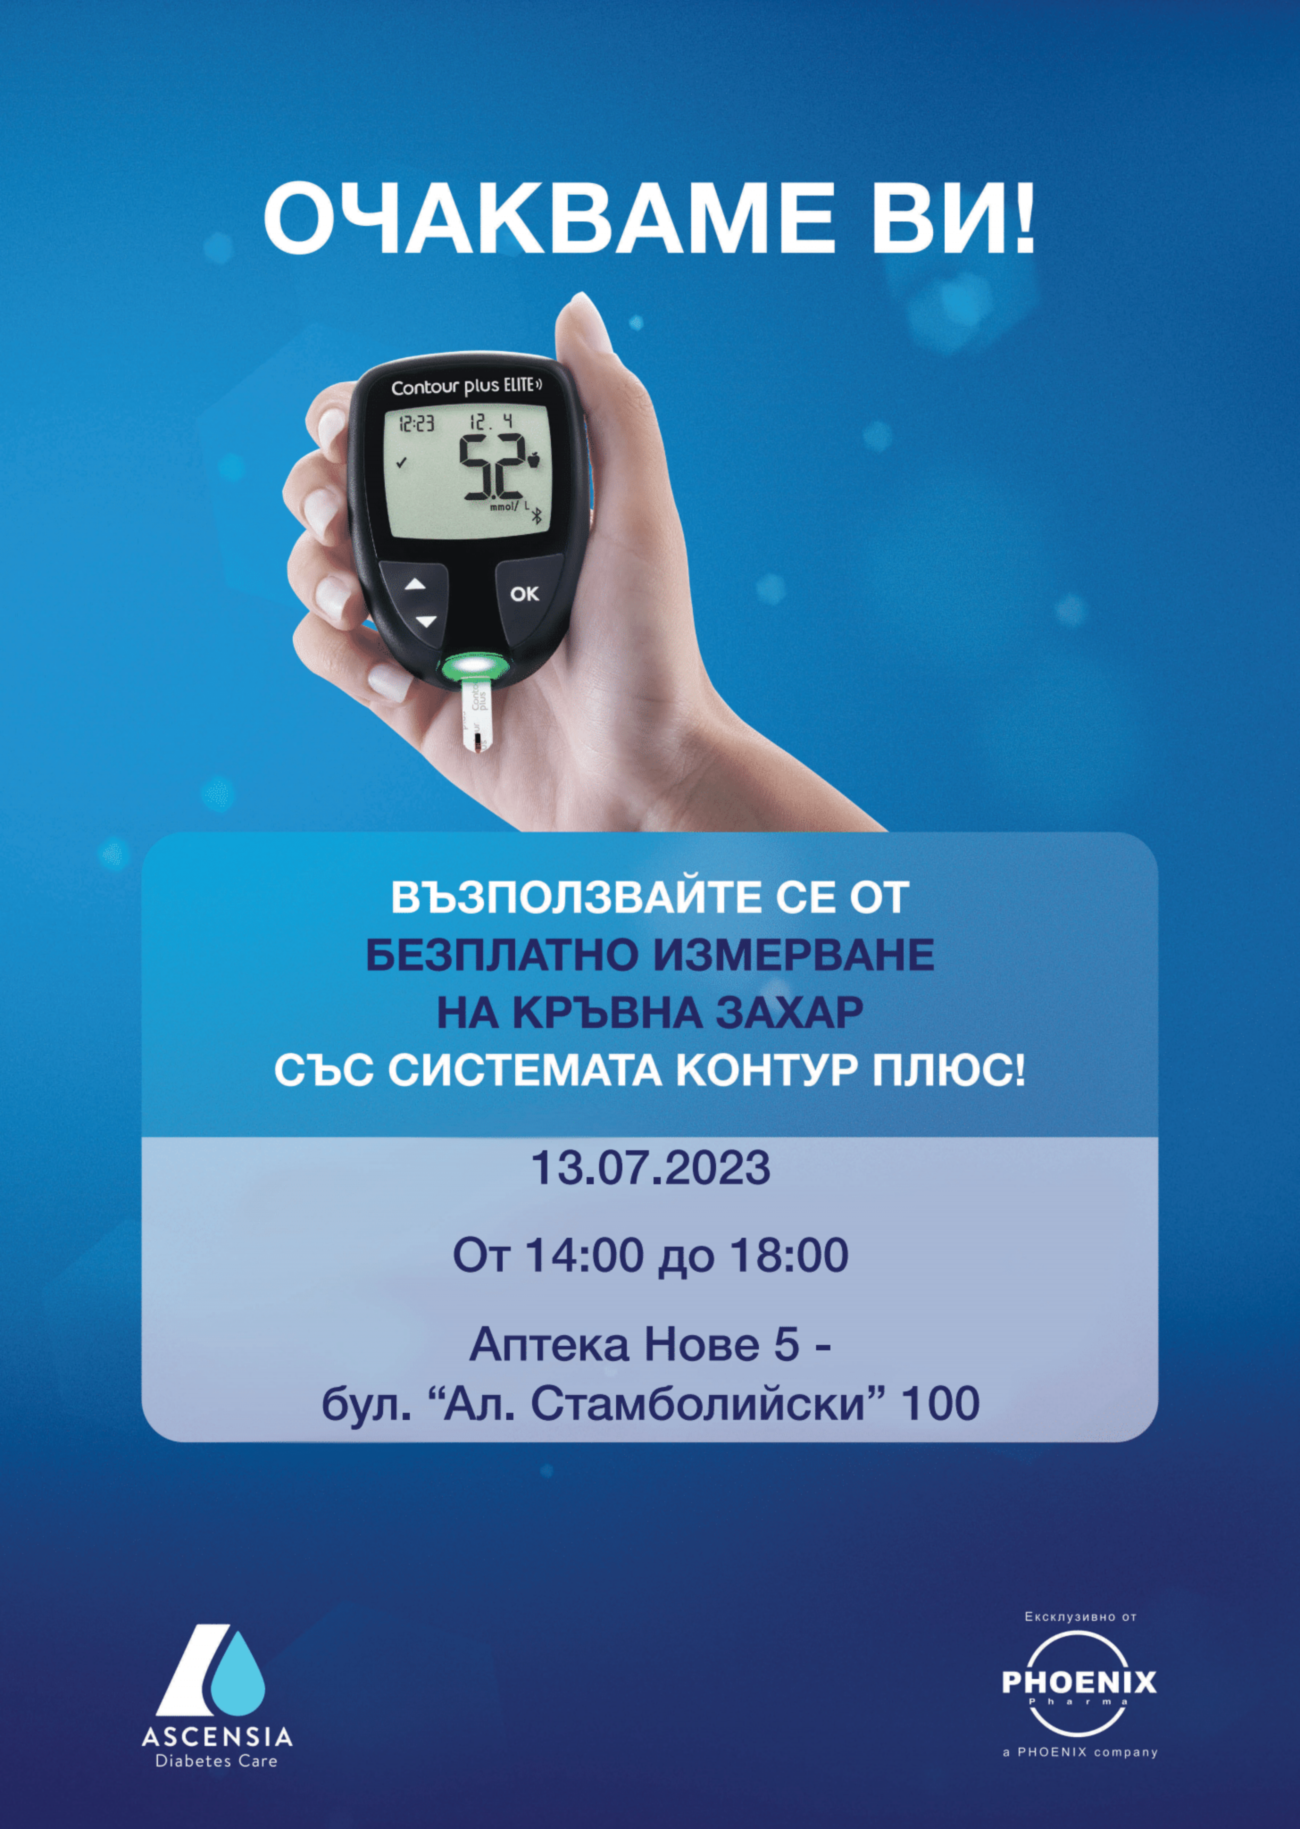 Безплатно измерване на кръвна захар в Аптека Нове 5 на 13.07 от 14:00 до 18:00ч.